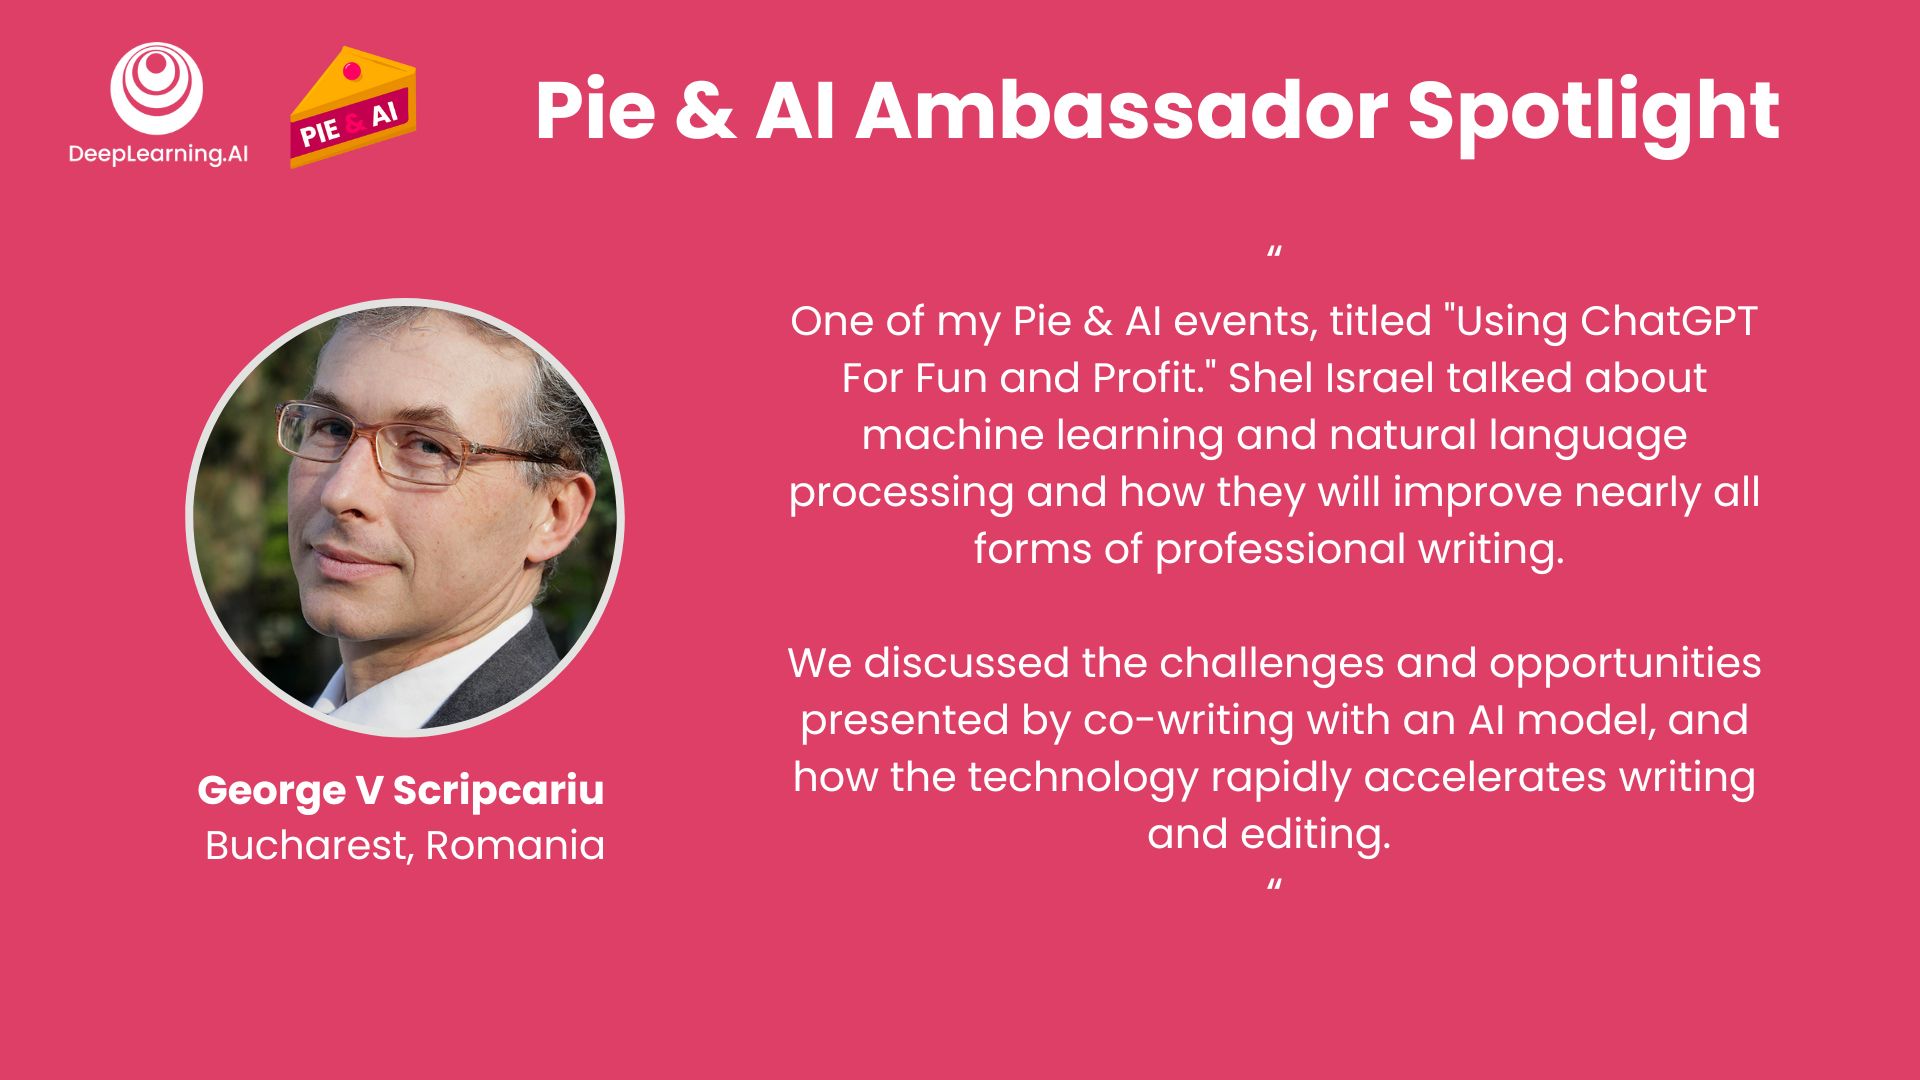 Pie & AI ambassador George V Scripcariu